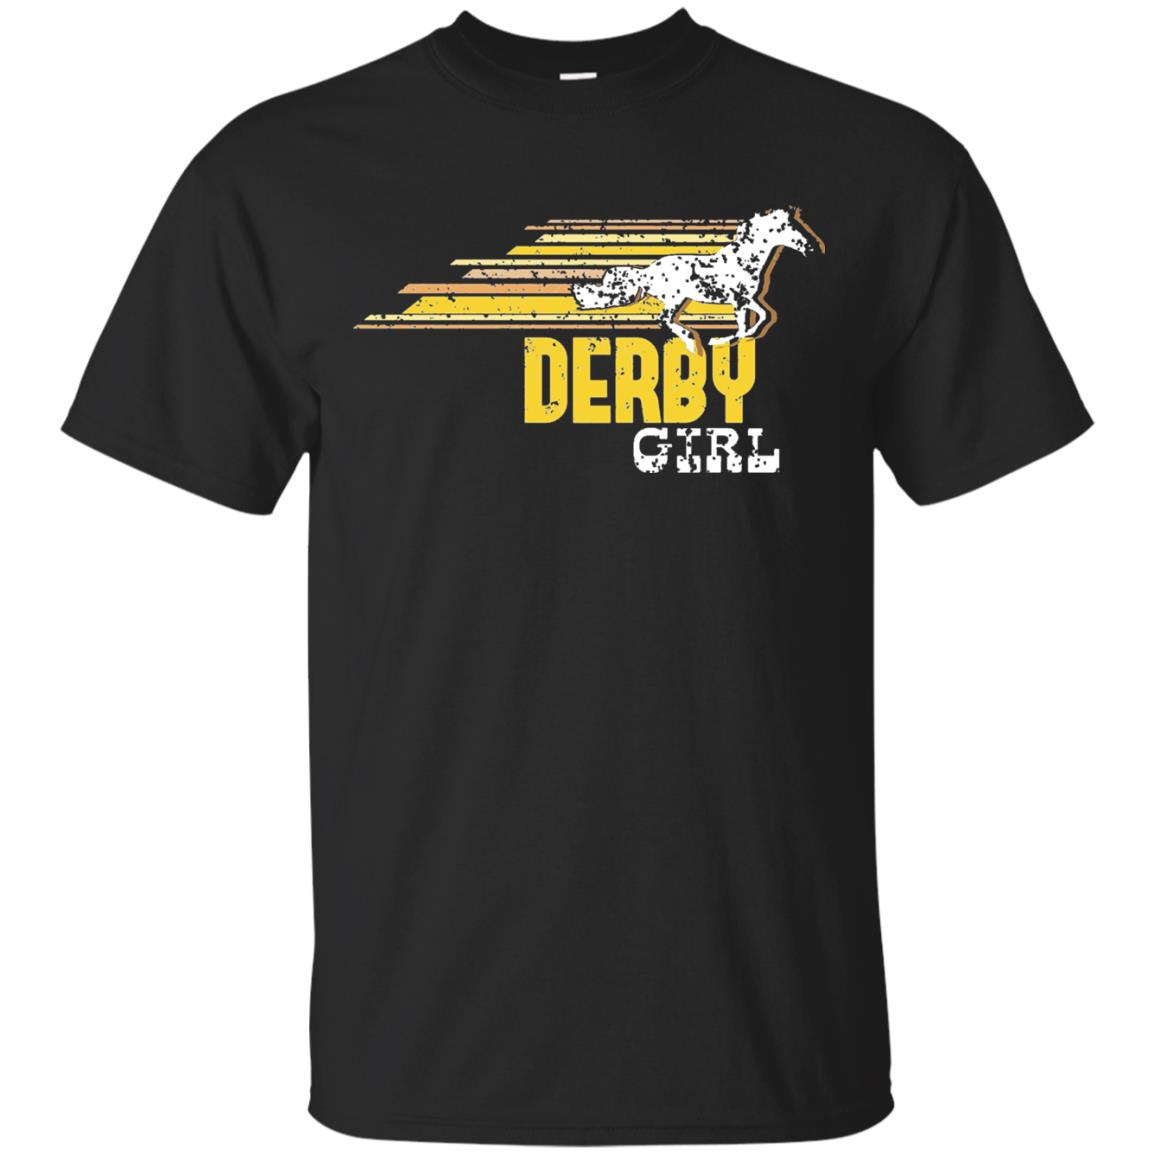 Derby Girl Derby Women Horse Race Shirt